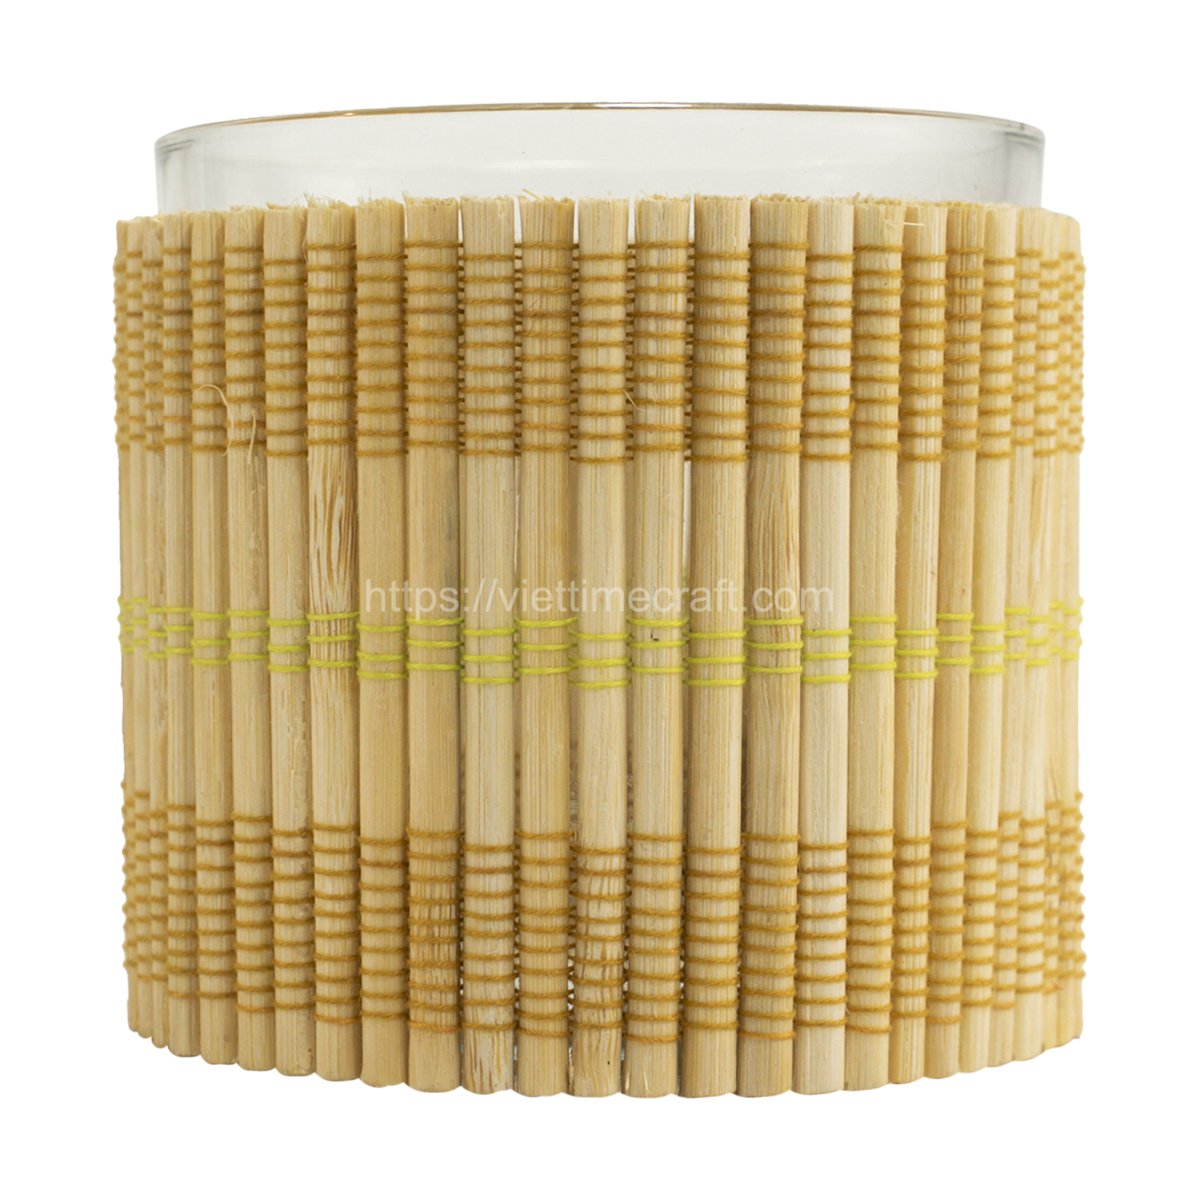 https://viettimecraft.com/wp-content/uploads/2024/01/Hot-trend-Bamboo-glass-holder-wholesale-vietnam-handicraft-supplier-4-1.jpg